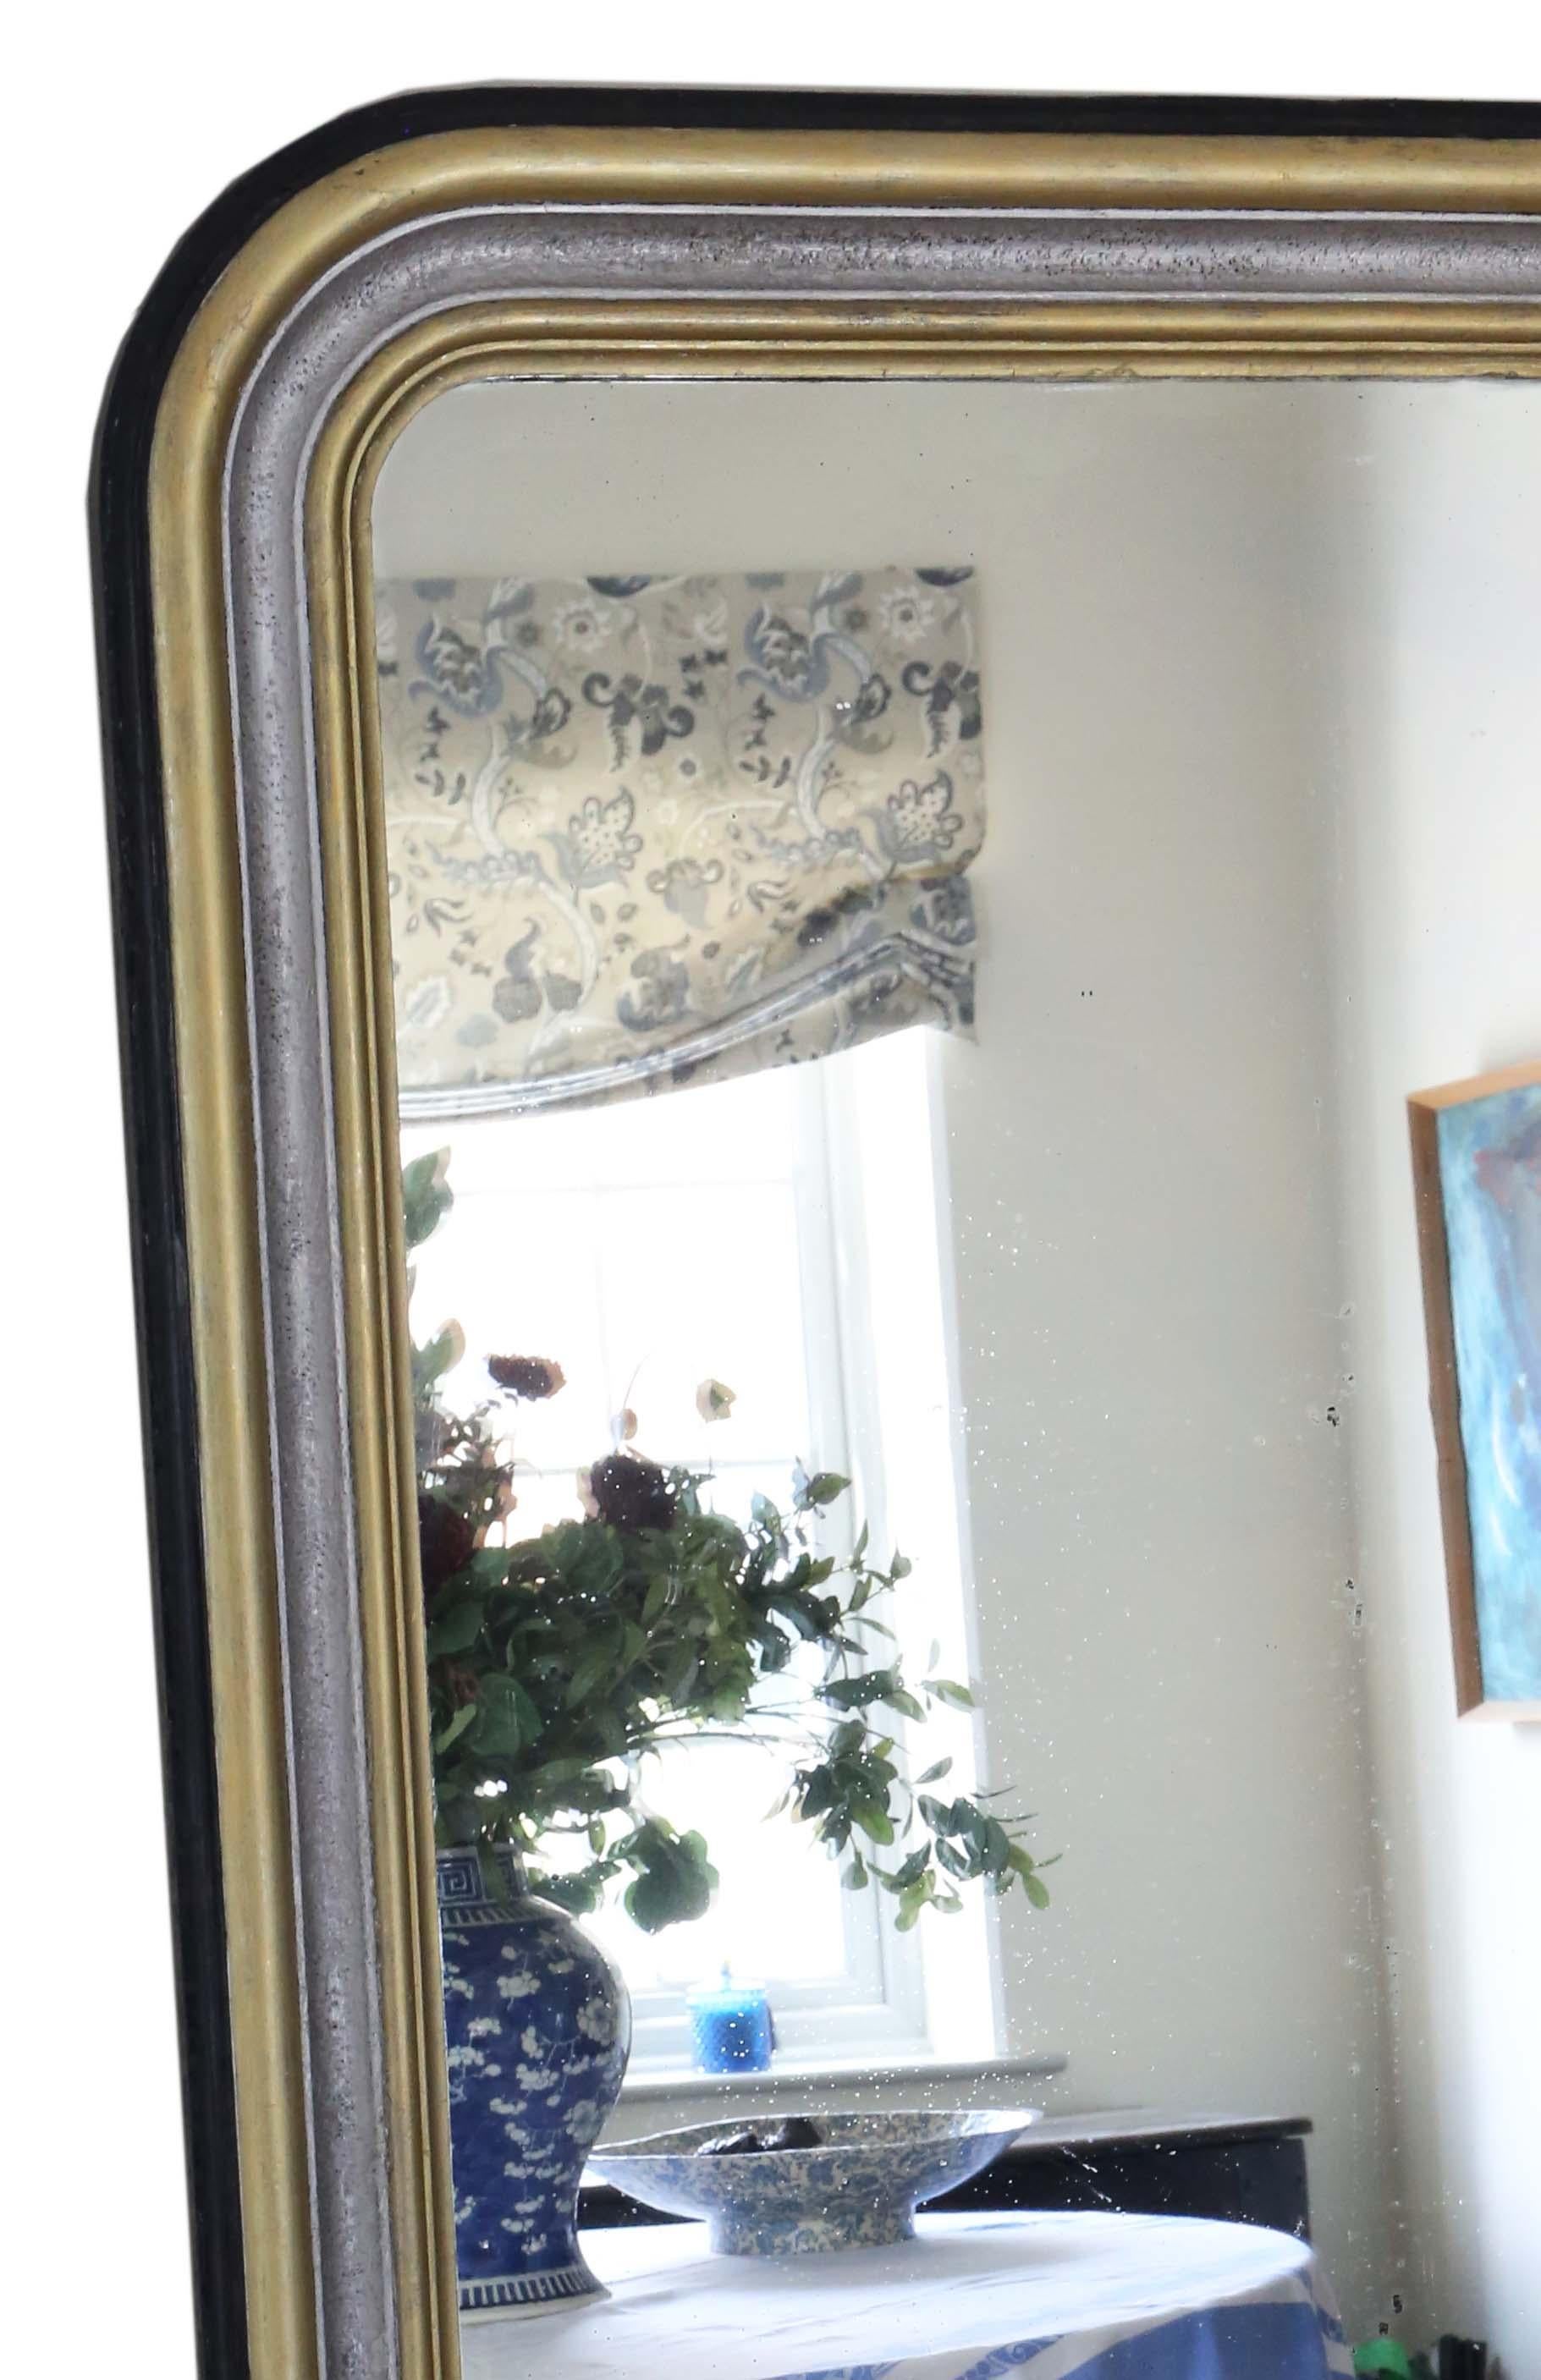 Antike 19. Jahrhundert sehr große Qualität ebonisiert Silber und vergoldet Boden Wand overmantle Spiegel.

Ein beeindruckender, seltener Fund, der an der richtigen Stelle fantastisch aussehen würde. Keine losen Fugen oder Holzwürmer.

Das